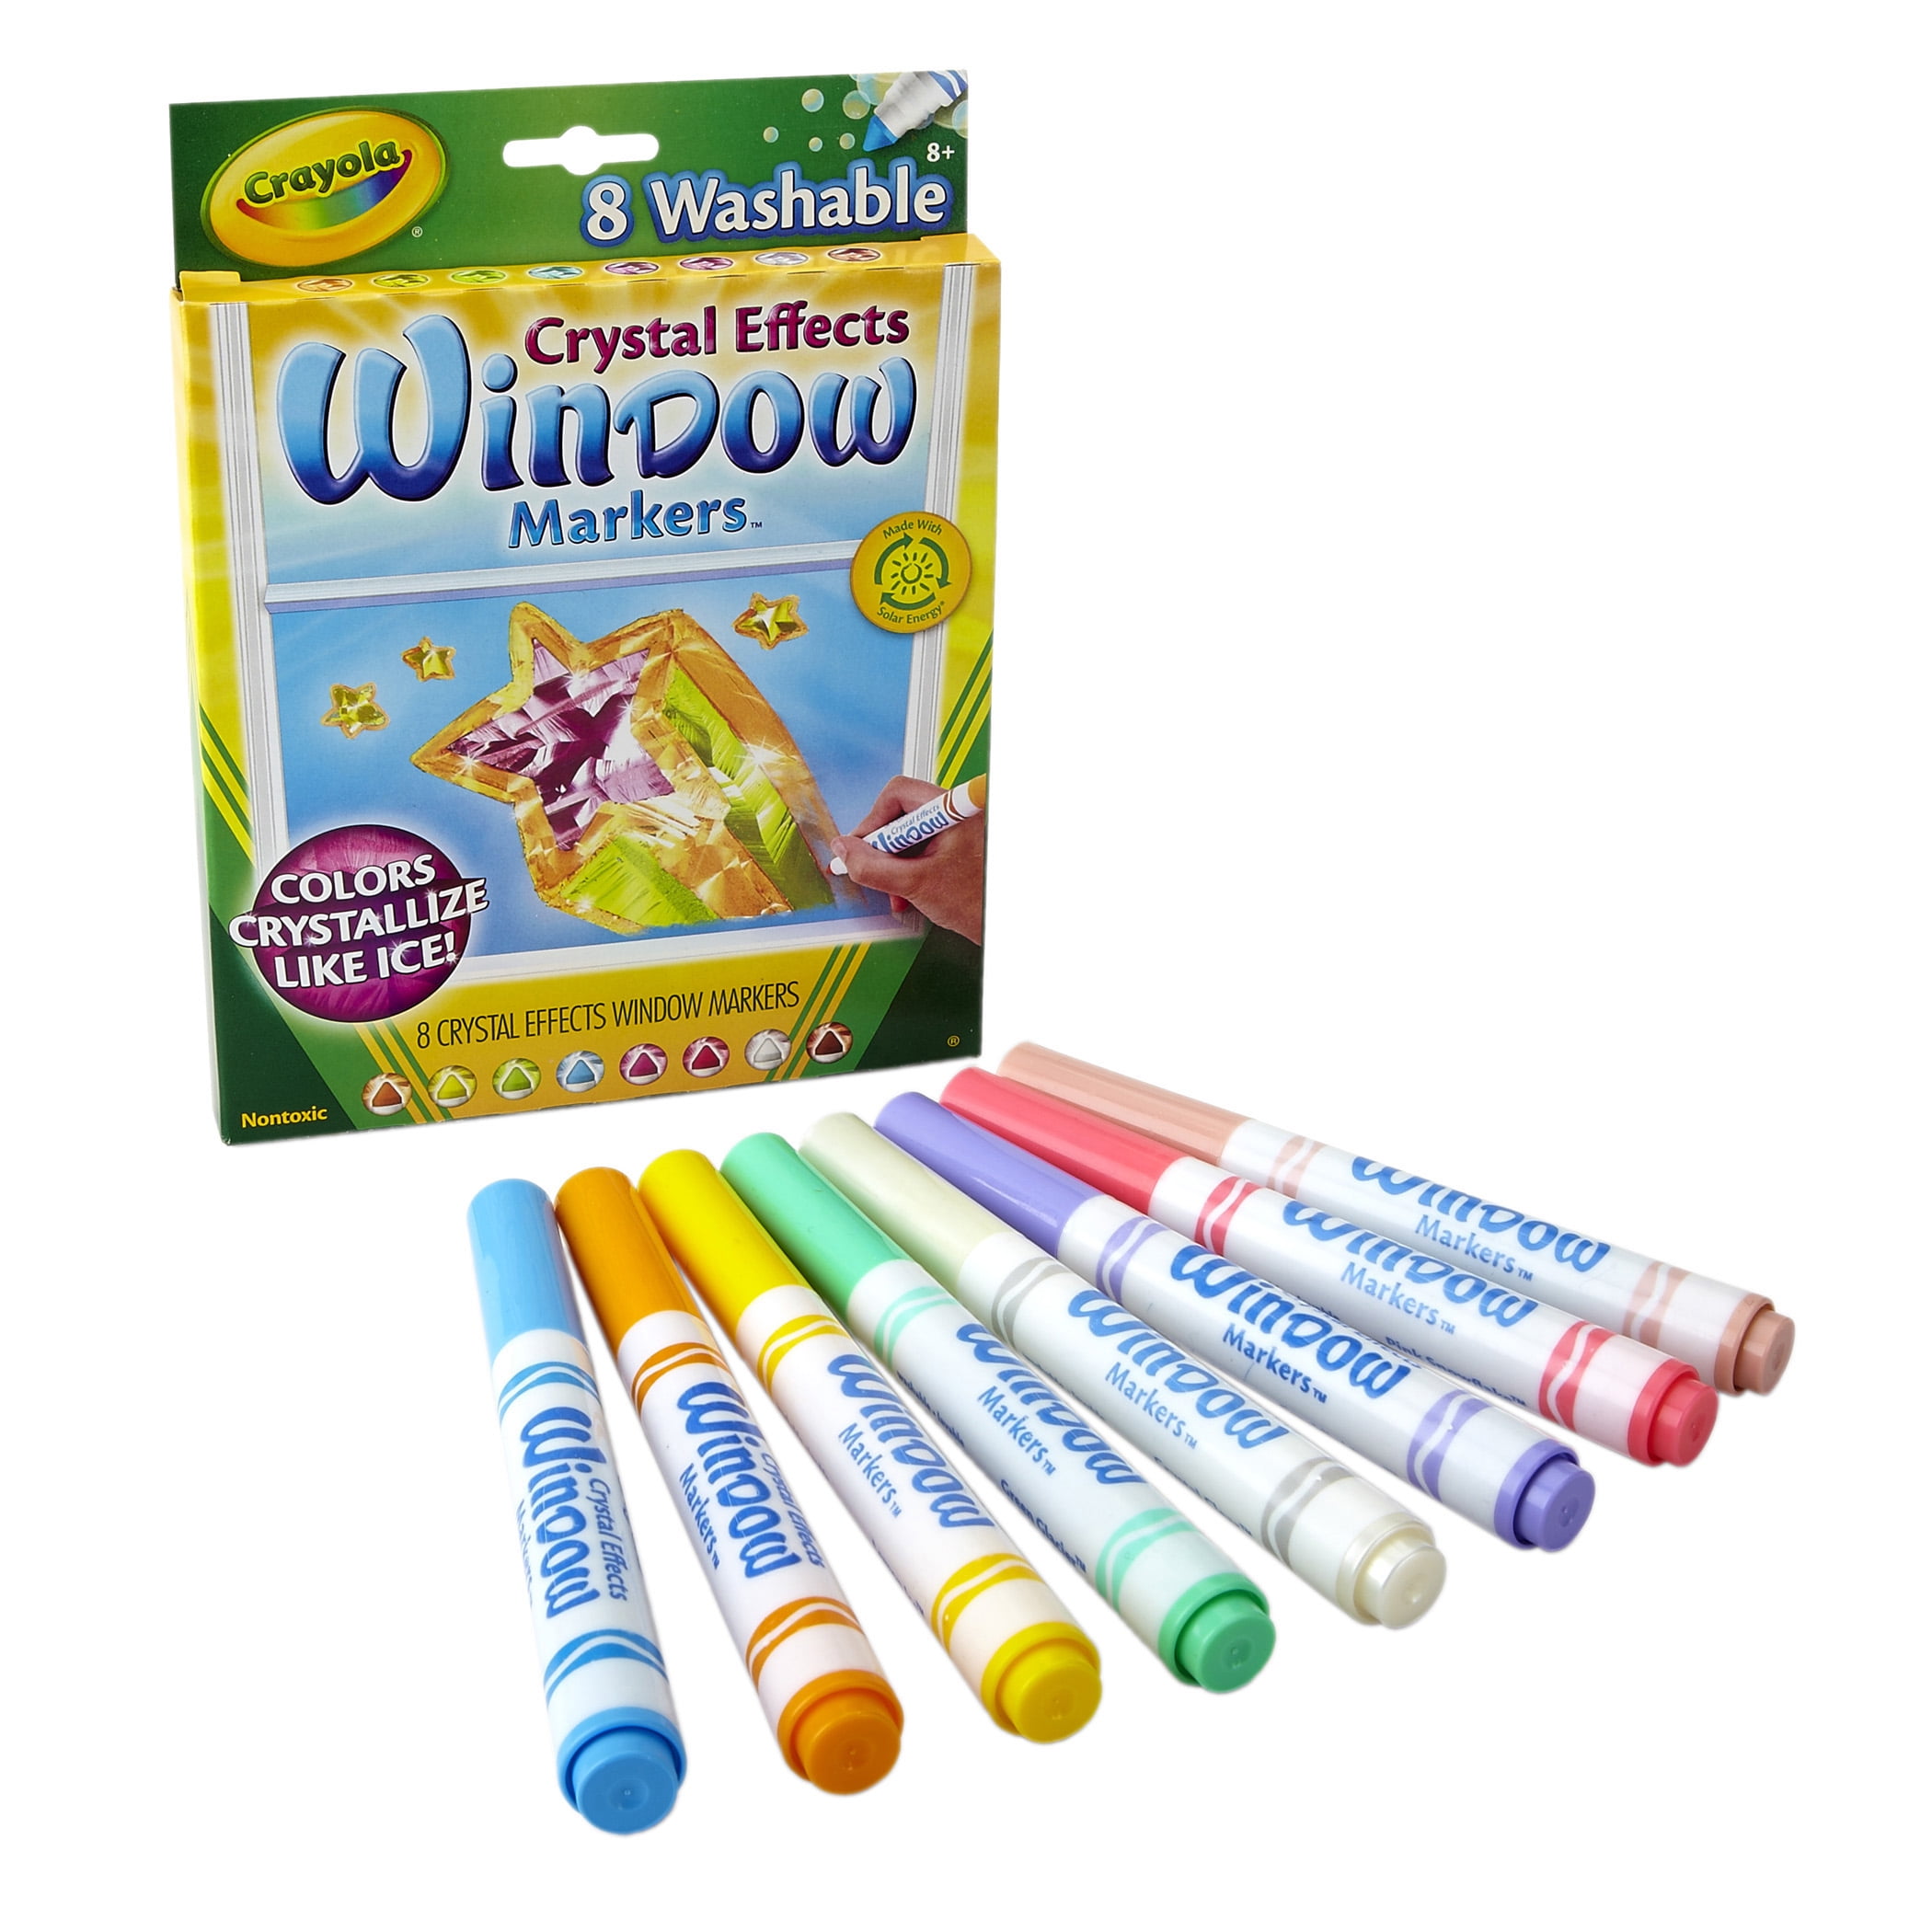 Crayola Washable Broadline Marker Set